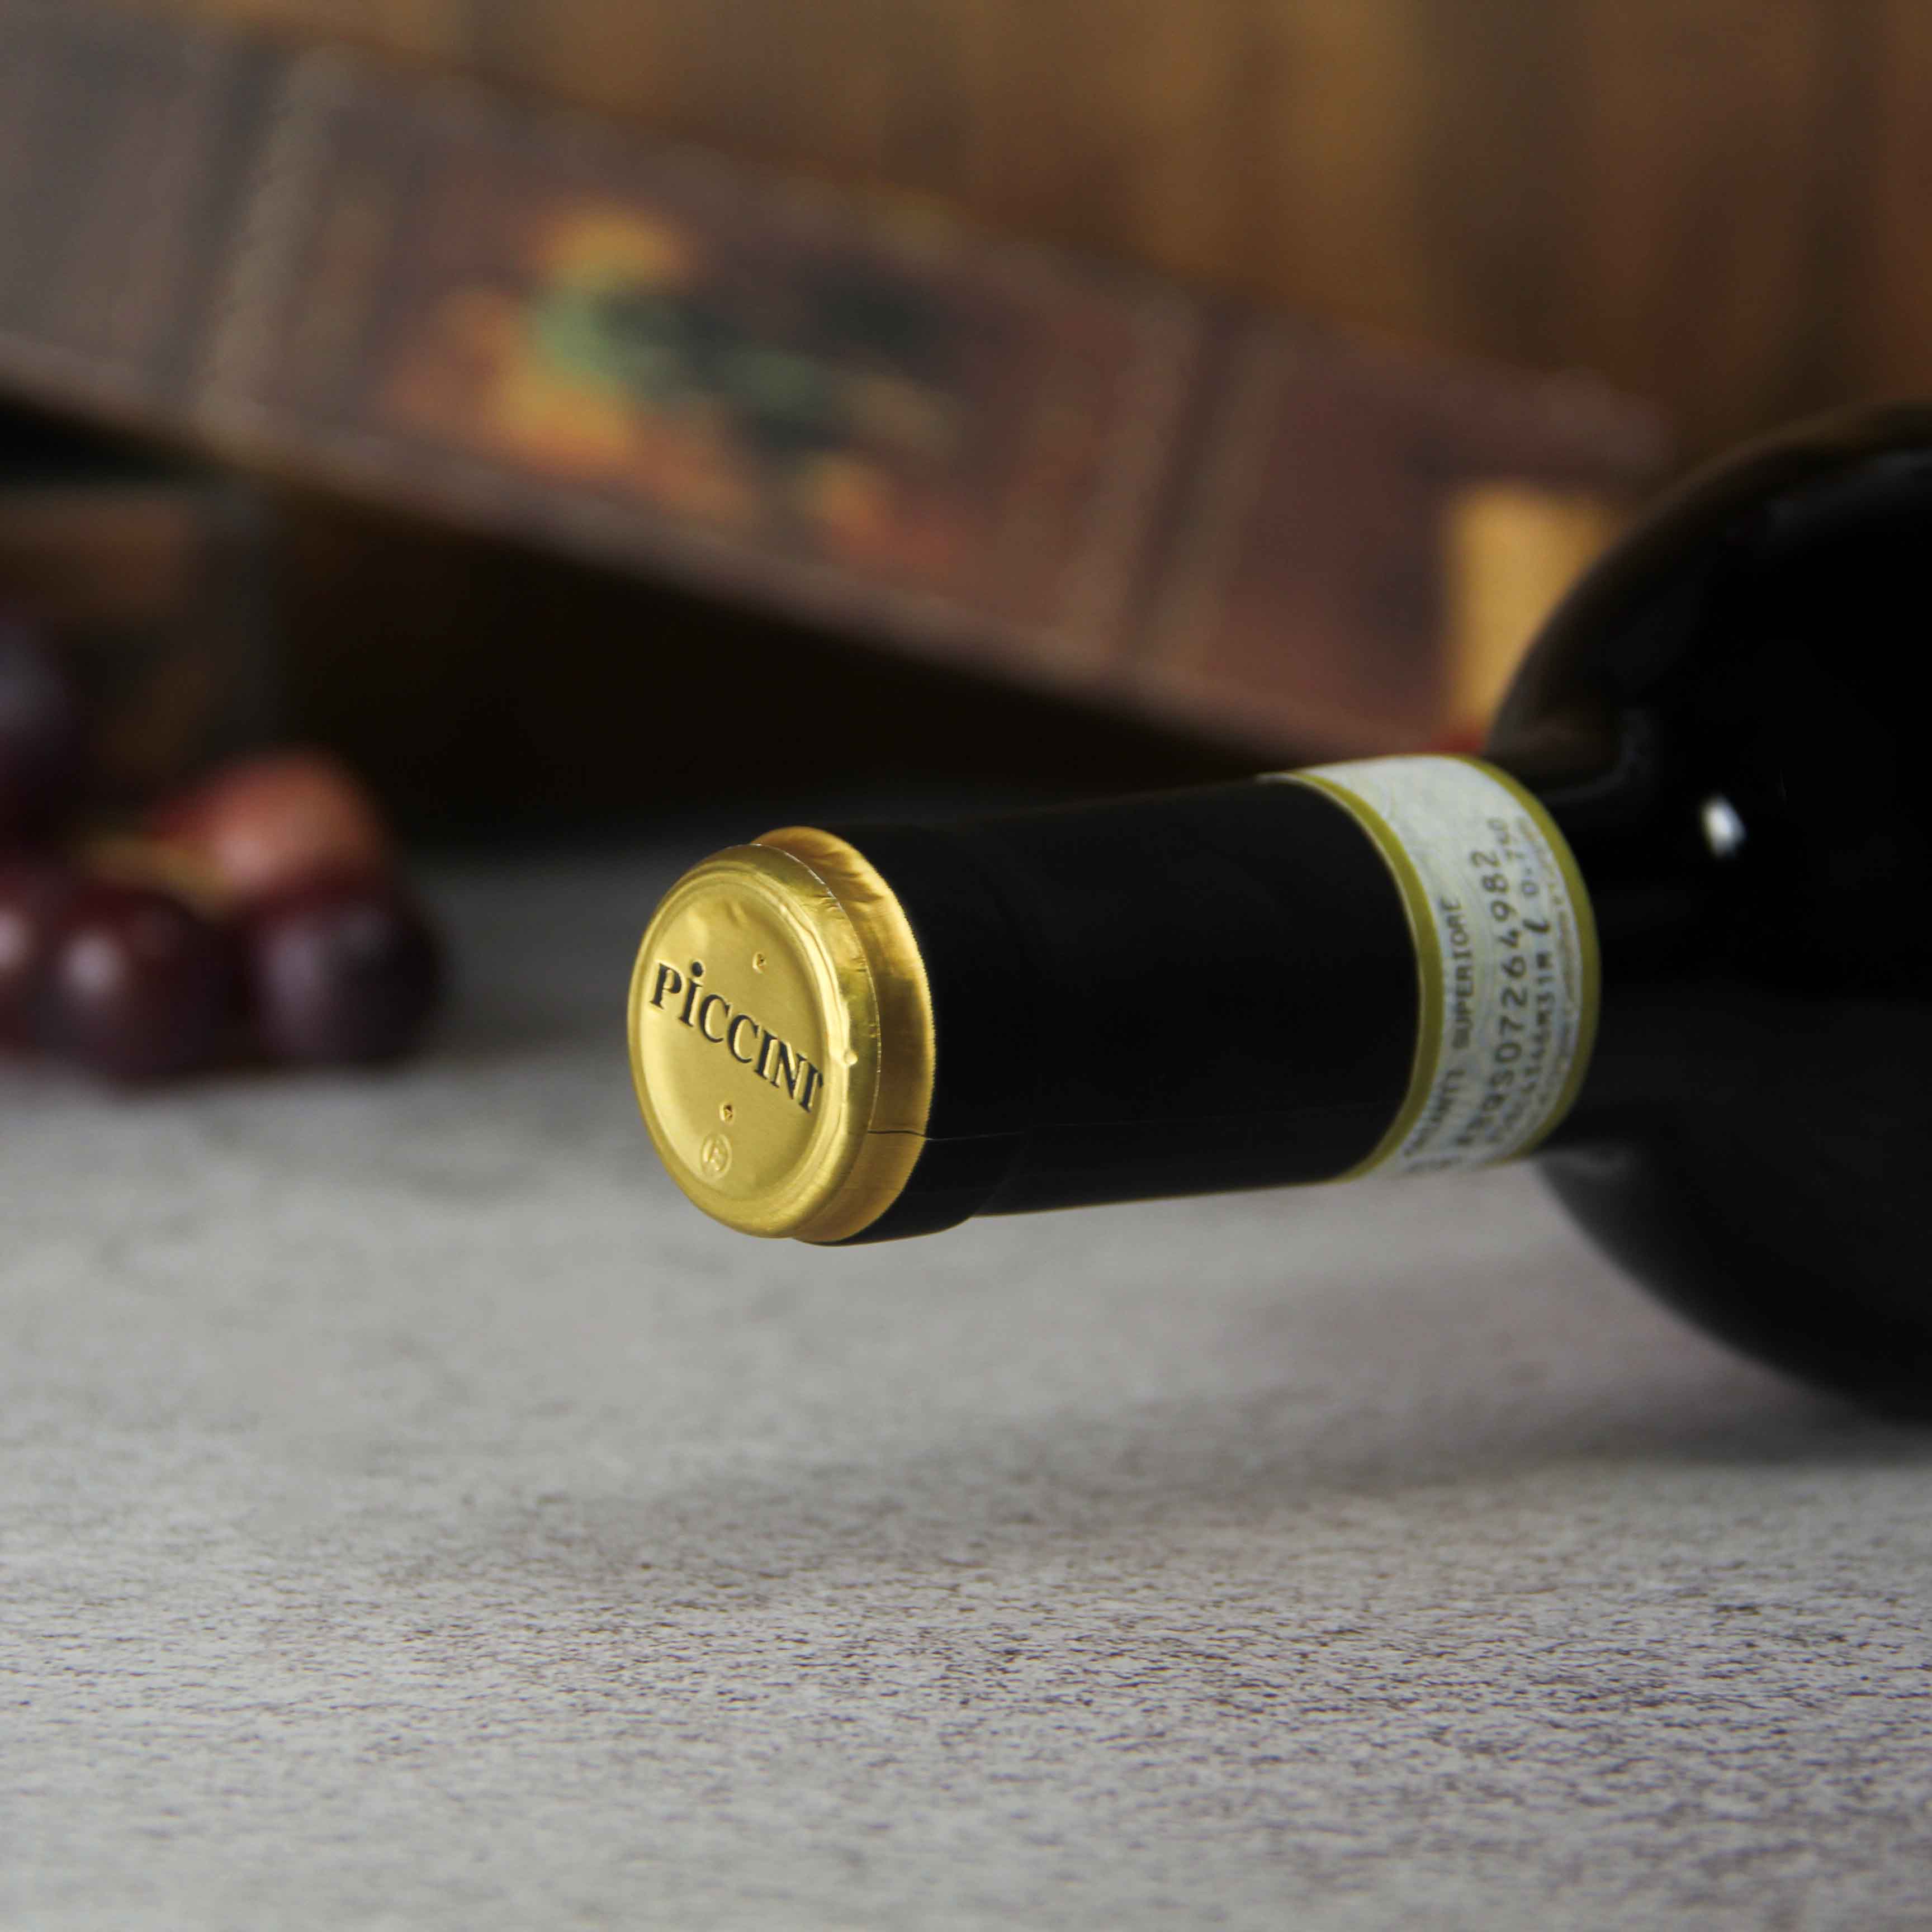 意大利彼奇尼1882基安蒂红葡萄酒红酒